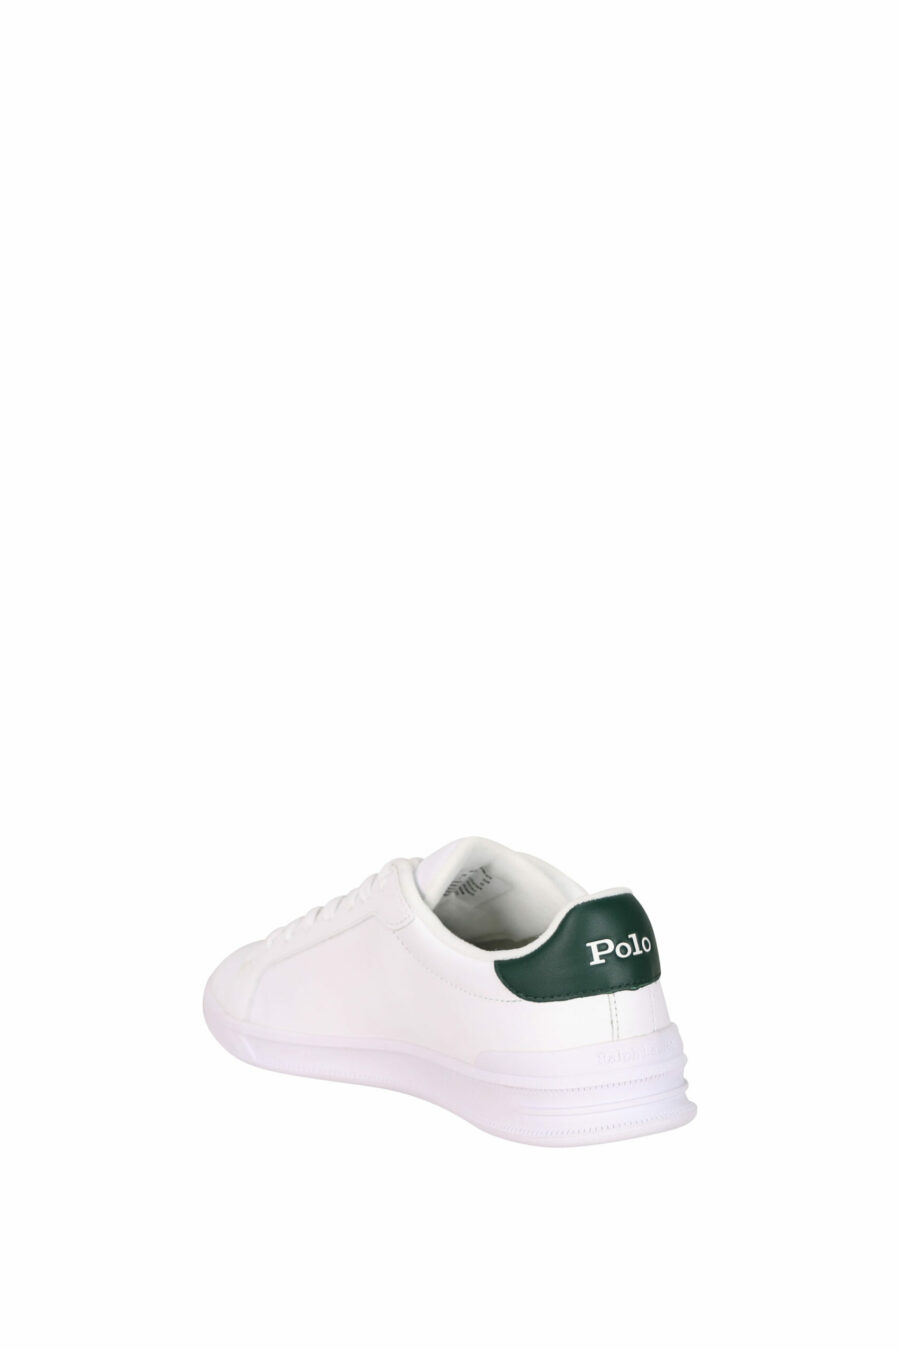 Baskets blanches avec détails verts et mini-logo vert "polo" - 3616419508906 3 échelles